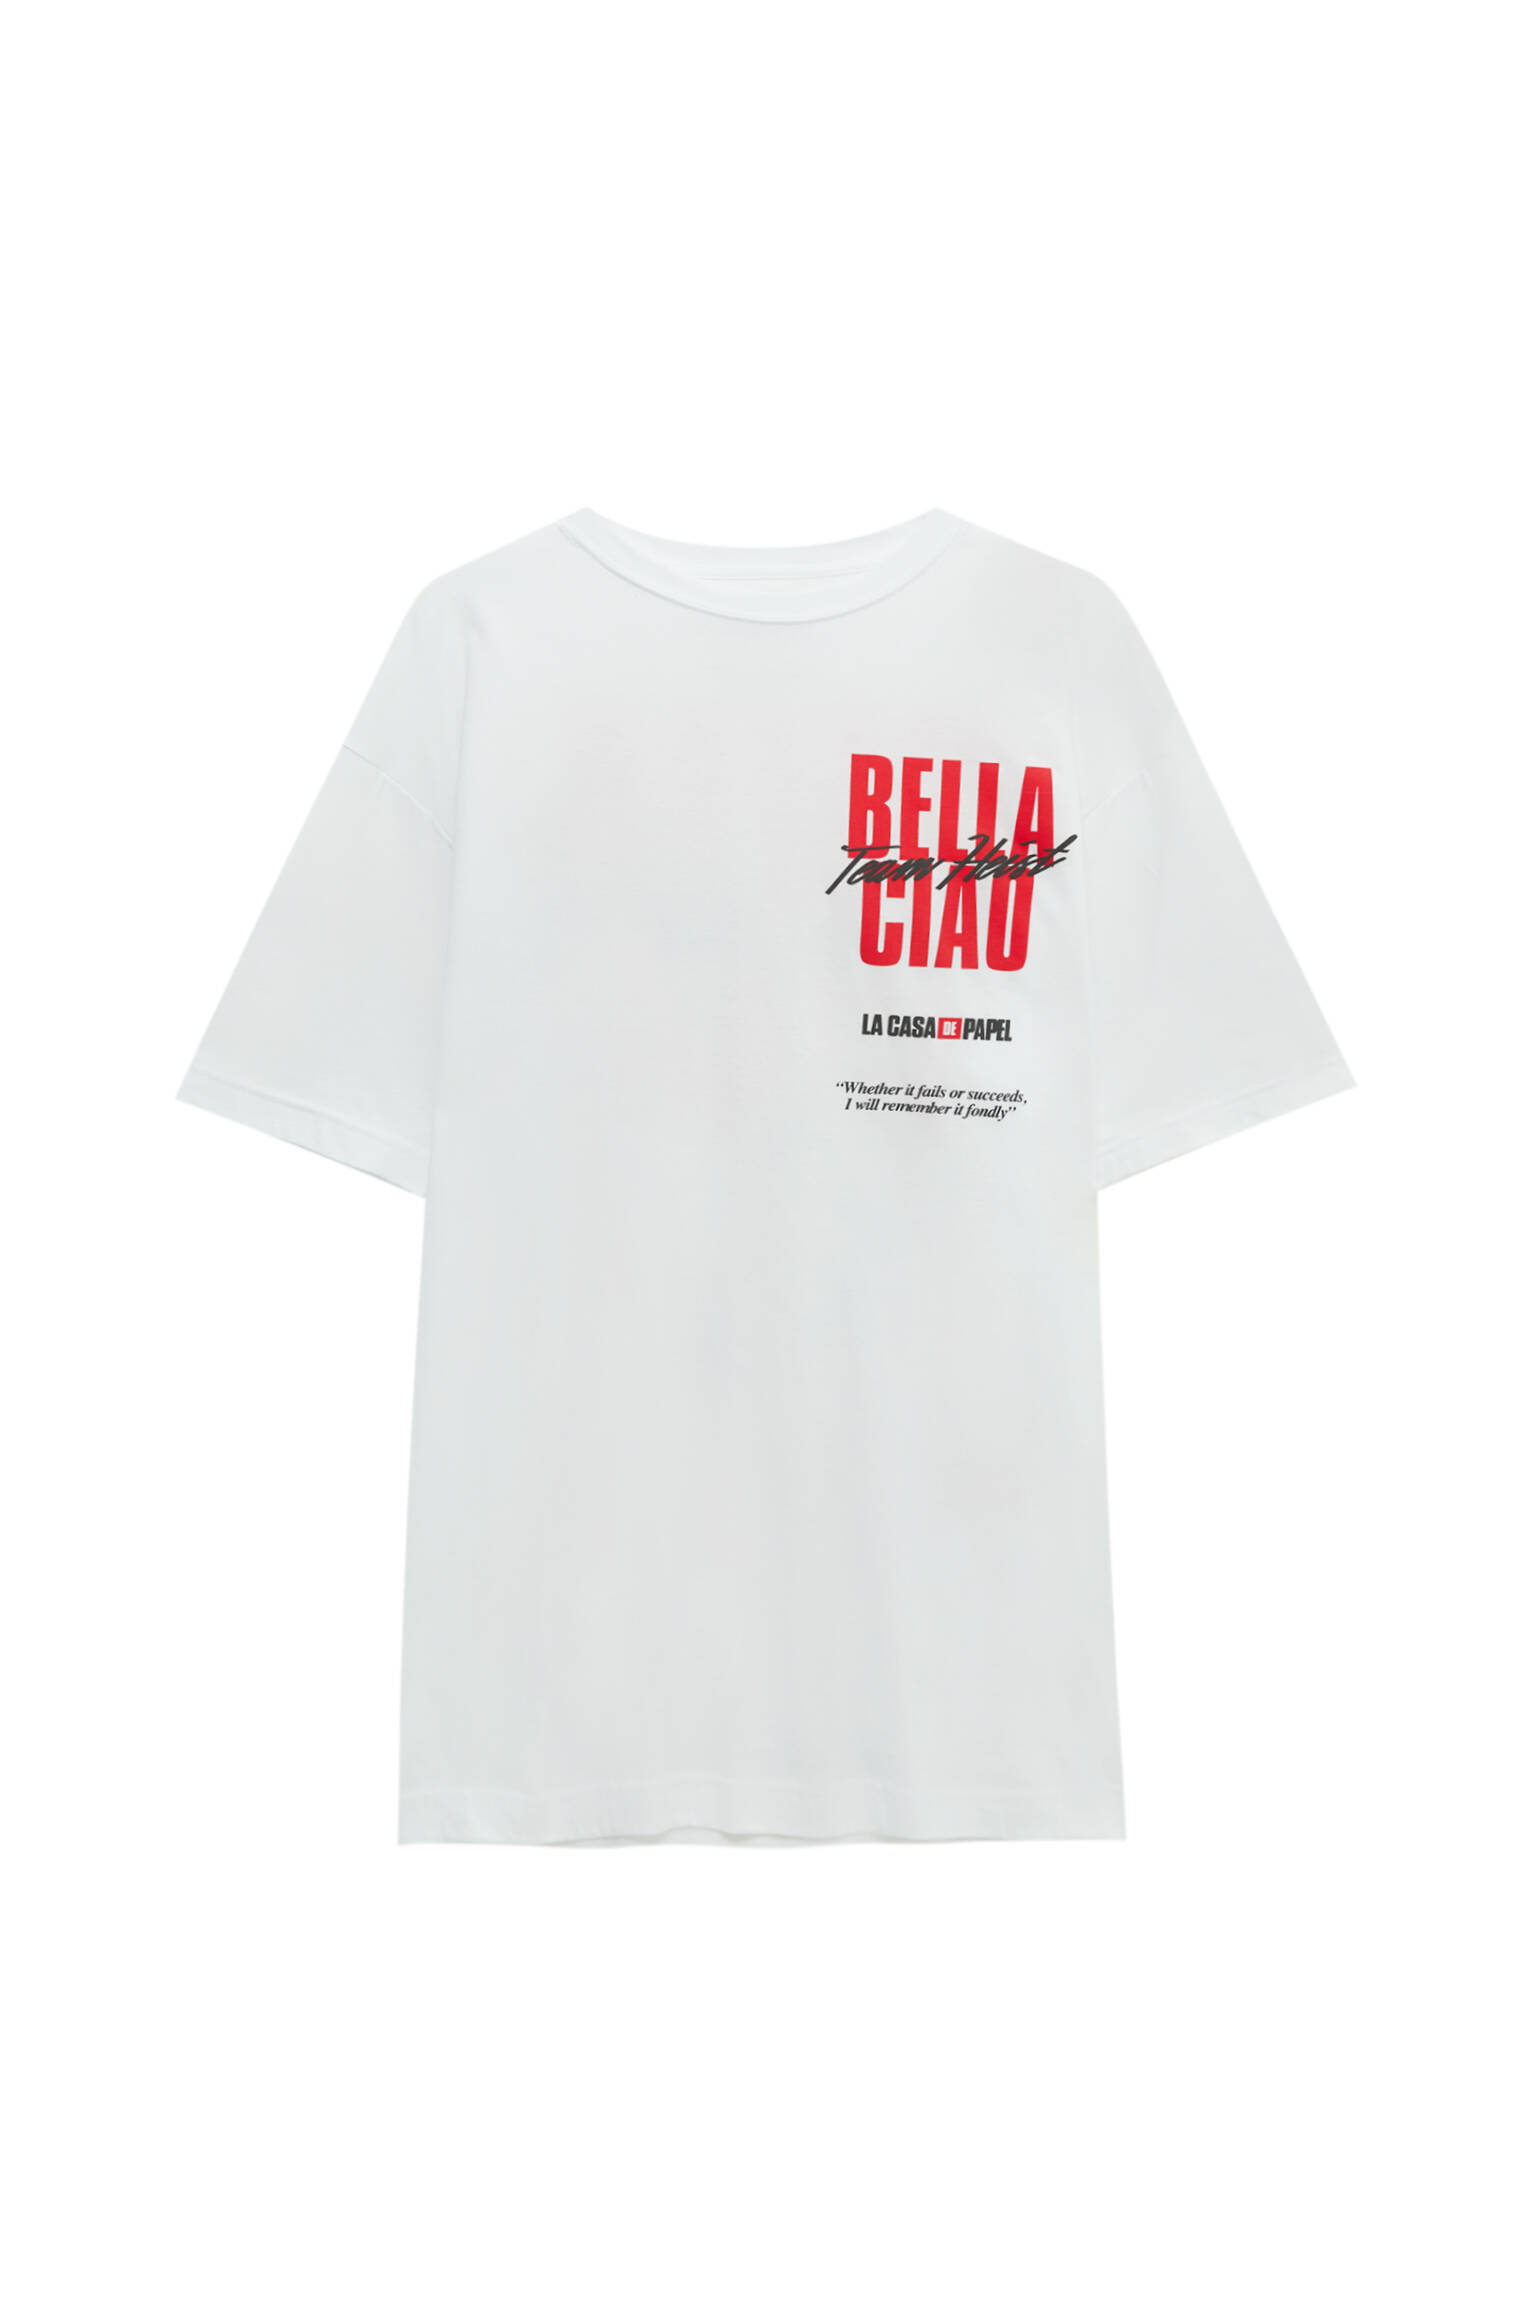 Pull&bear Homme T-shirt La Casa De Papel X Pull&bear Blanc En Coton à Col Rond Et Manches Courtes, Avec Inscription « bella Ciao » Contrastante. Blanc S